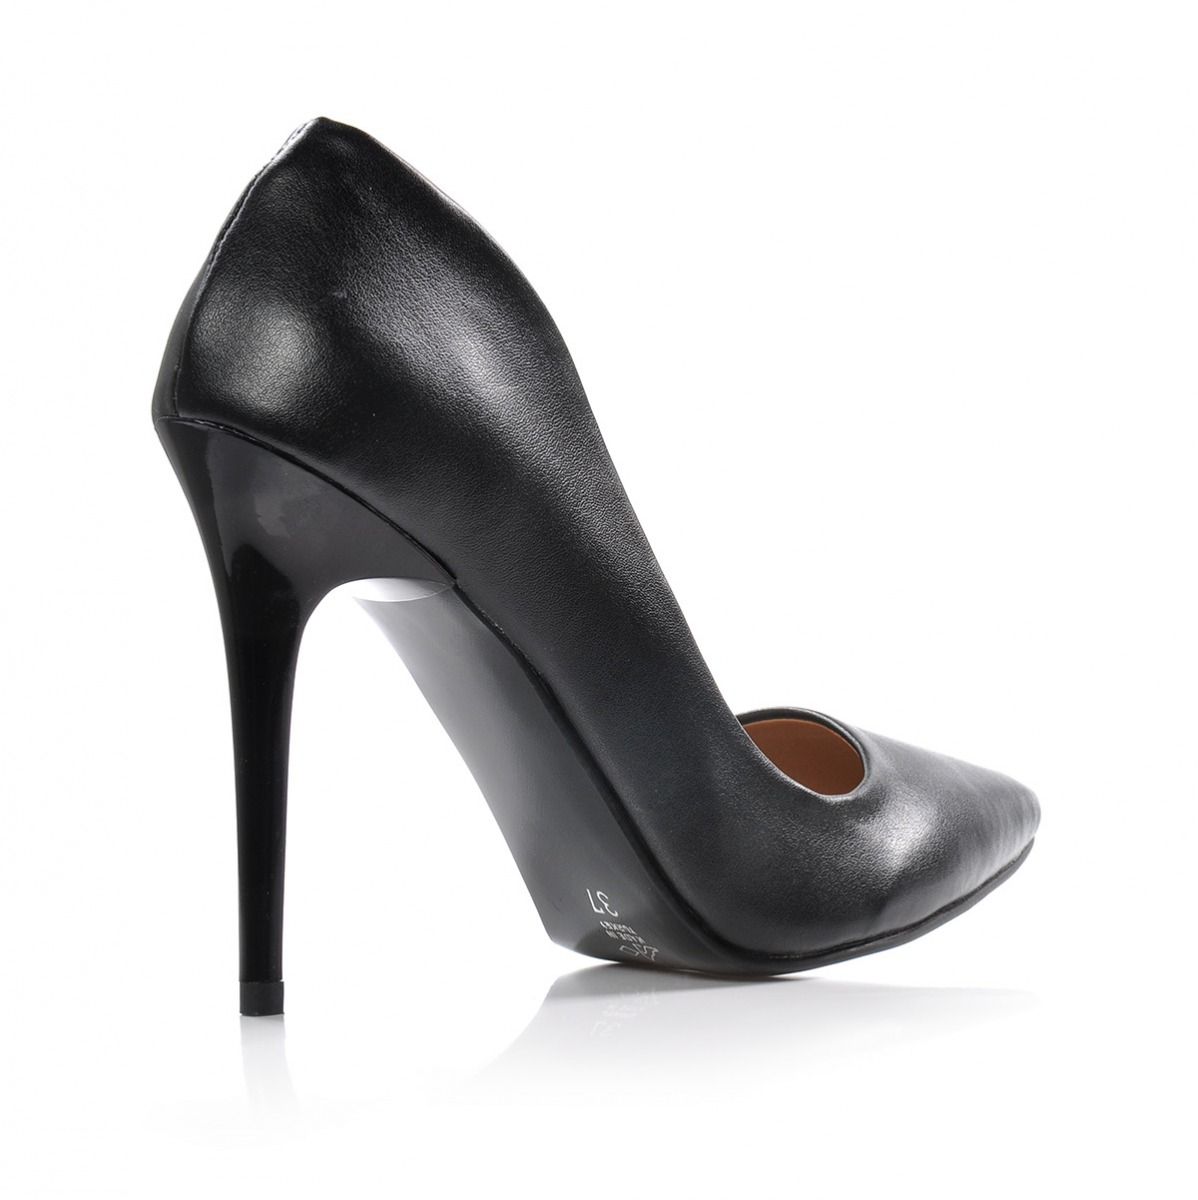 Flo Kadın  Siyah Klasik Topuklu Ayakkabı VZN-332Y. 3